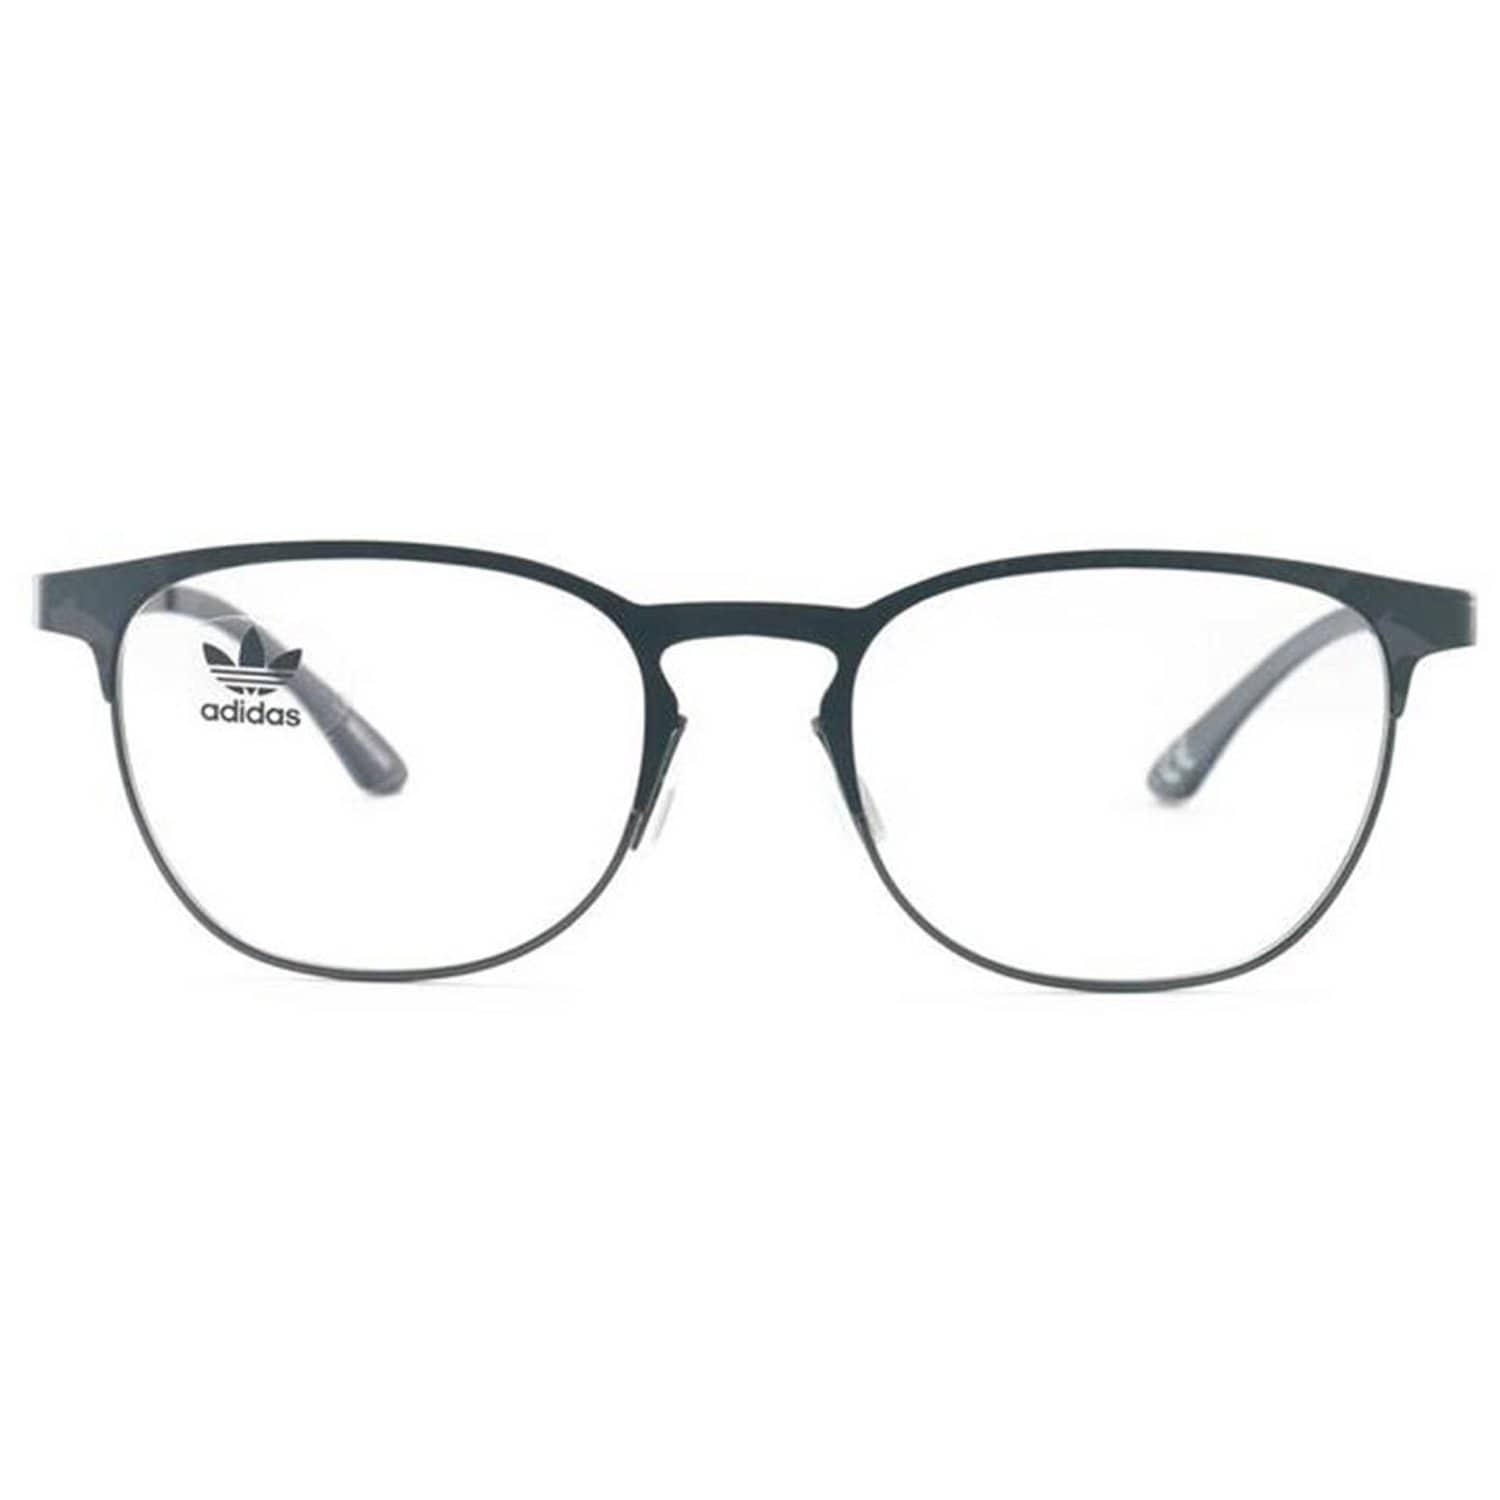 ADIDAS AOM003O 143.000 Camo Grey Frame Eyeglasses Demo Lens